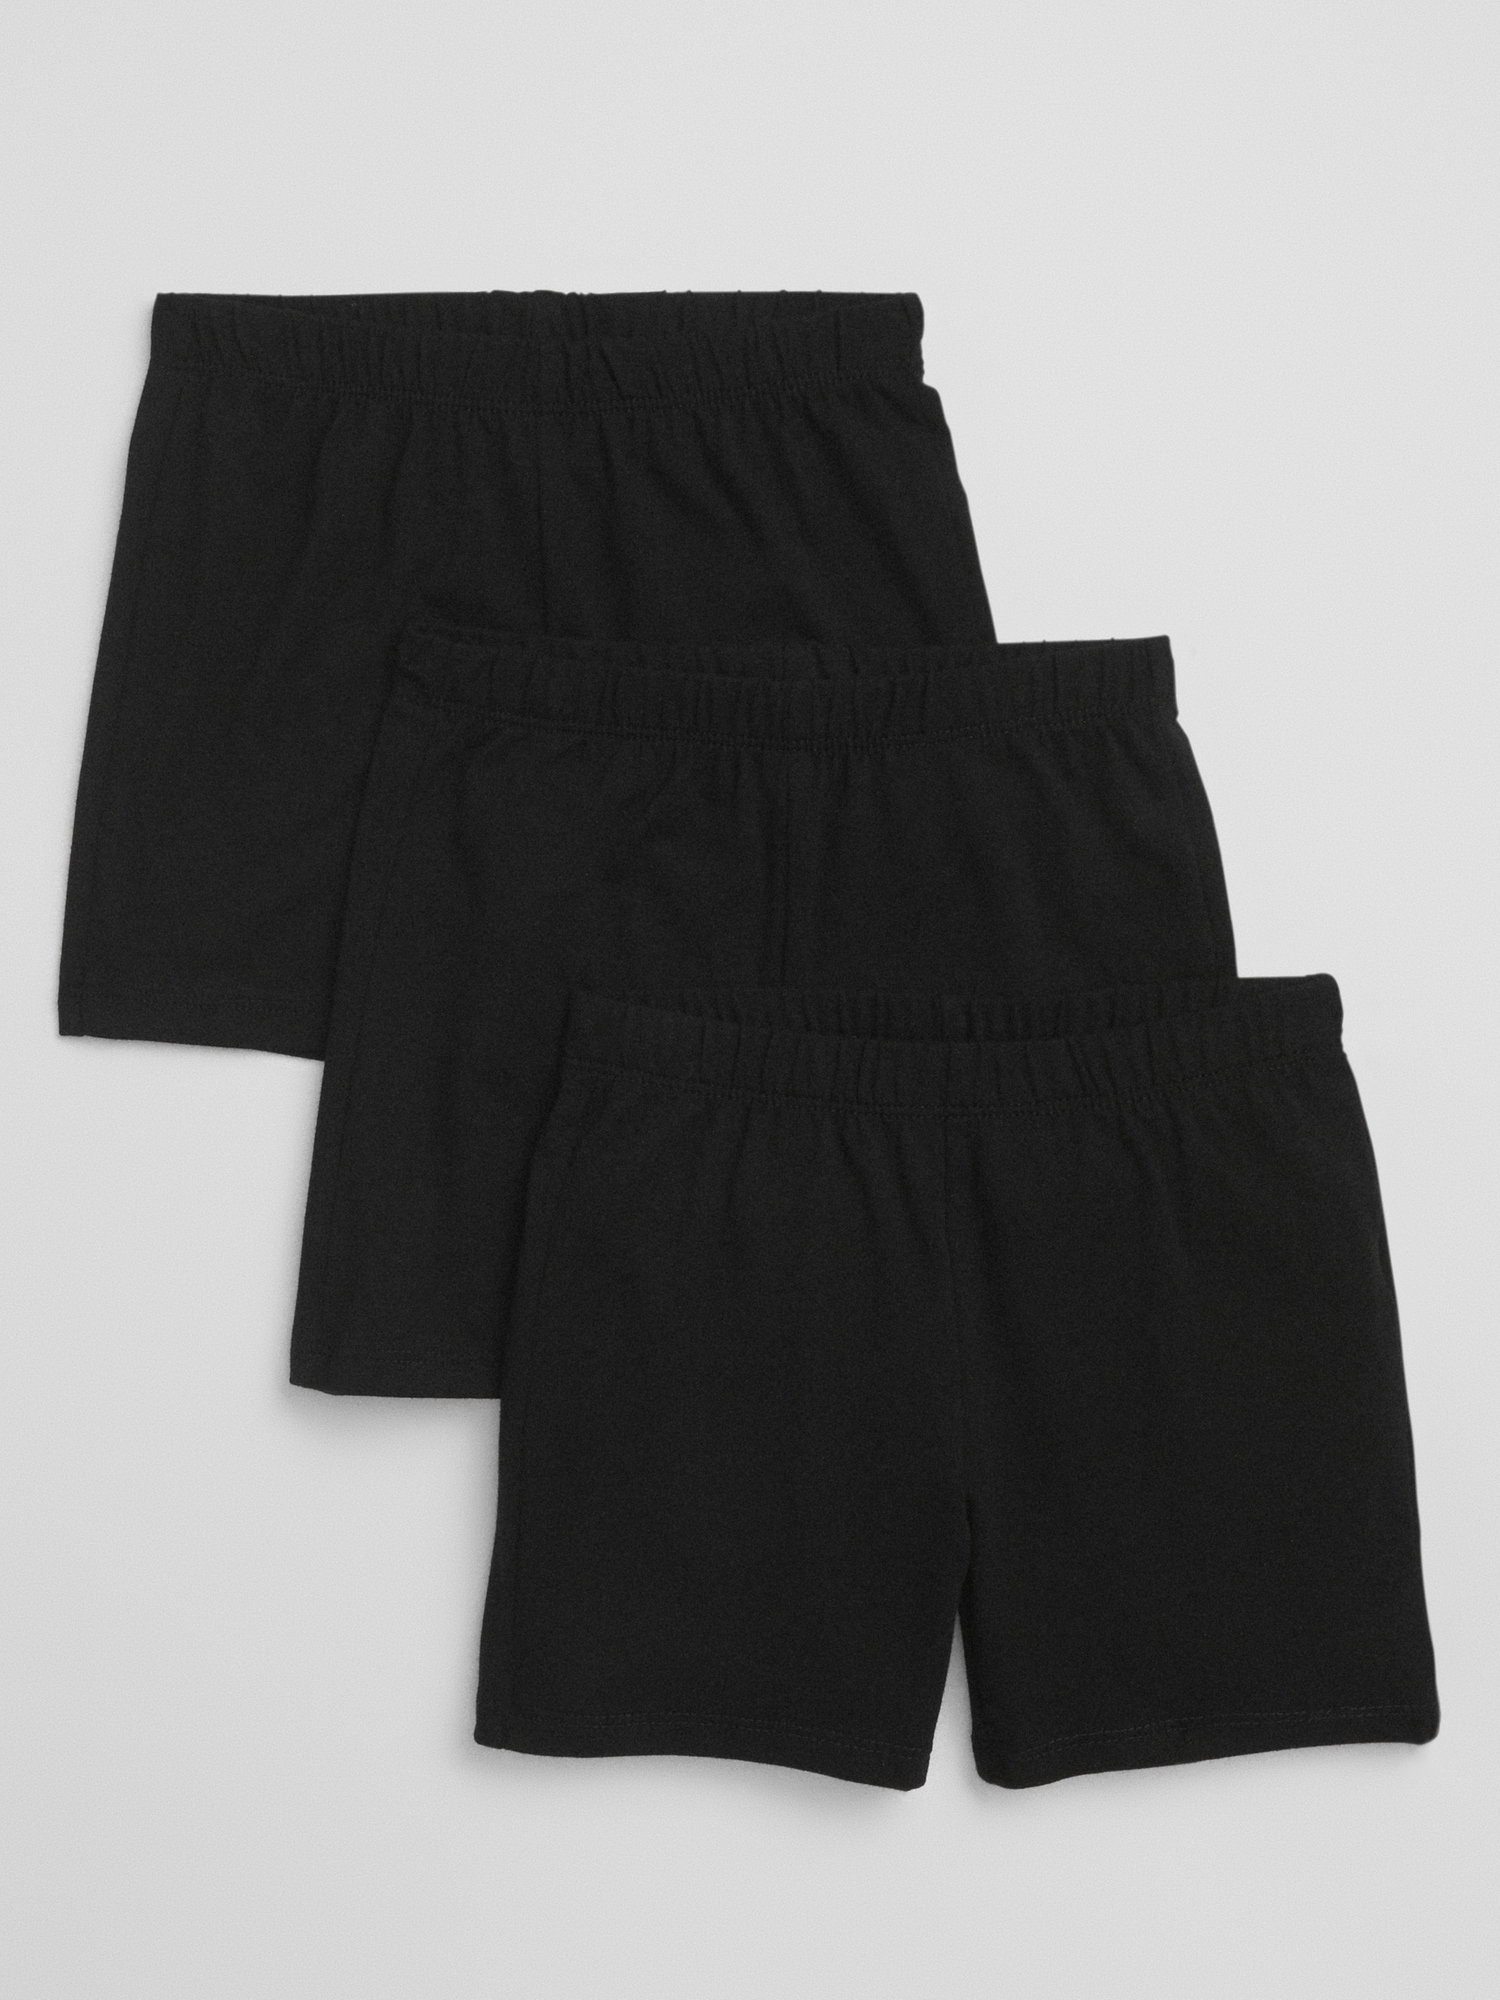 Gap Kids Pull-On Cartwheel Shorts (3-Pack)